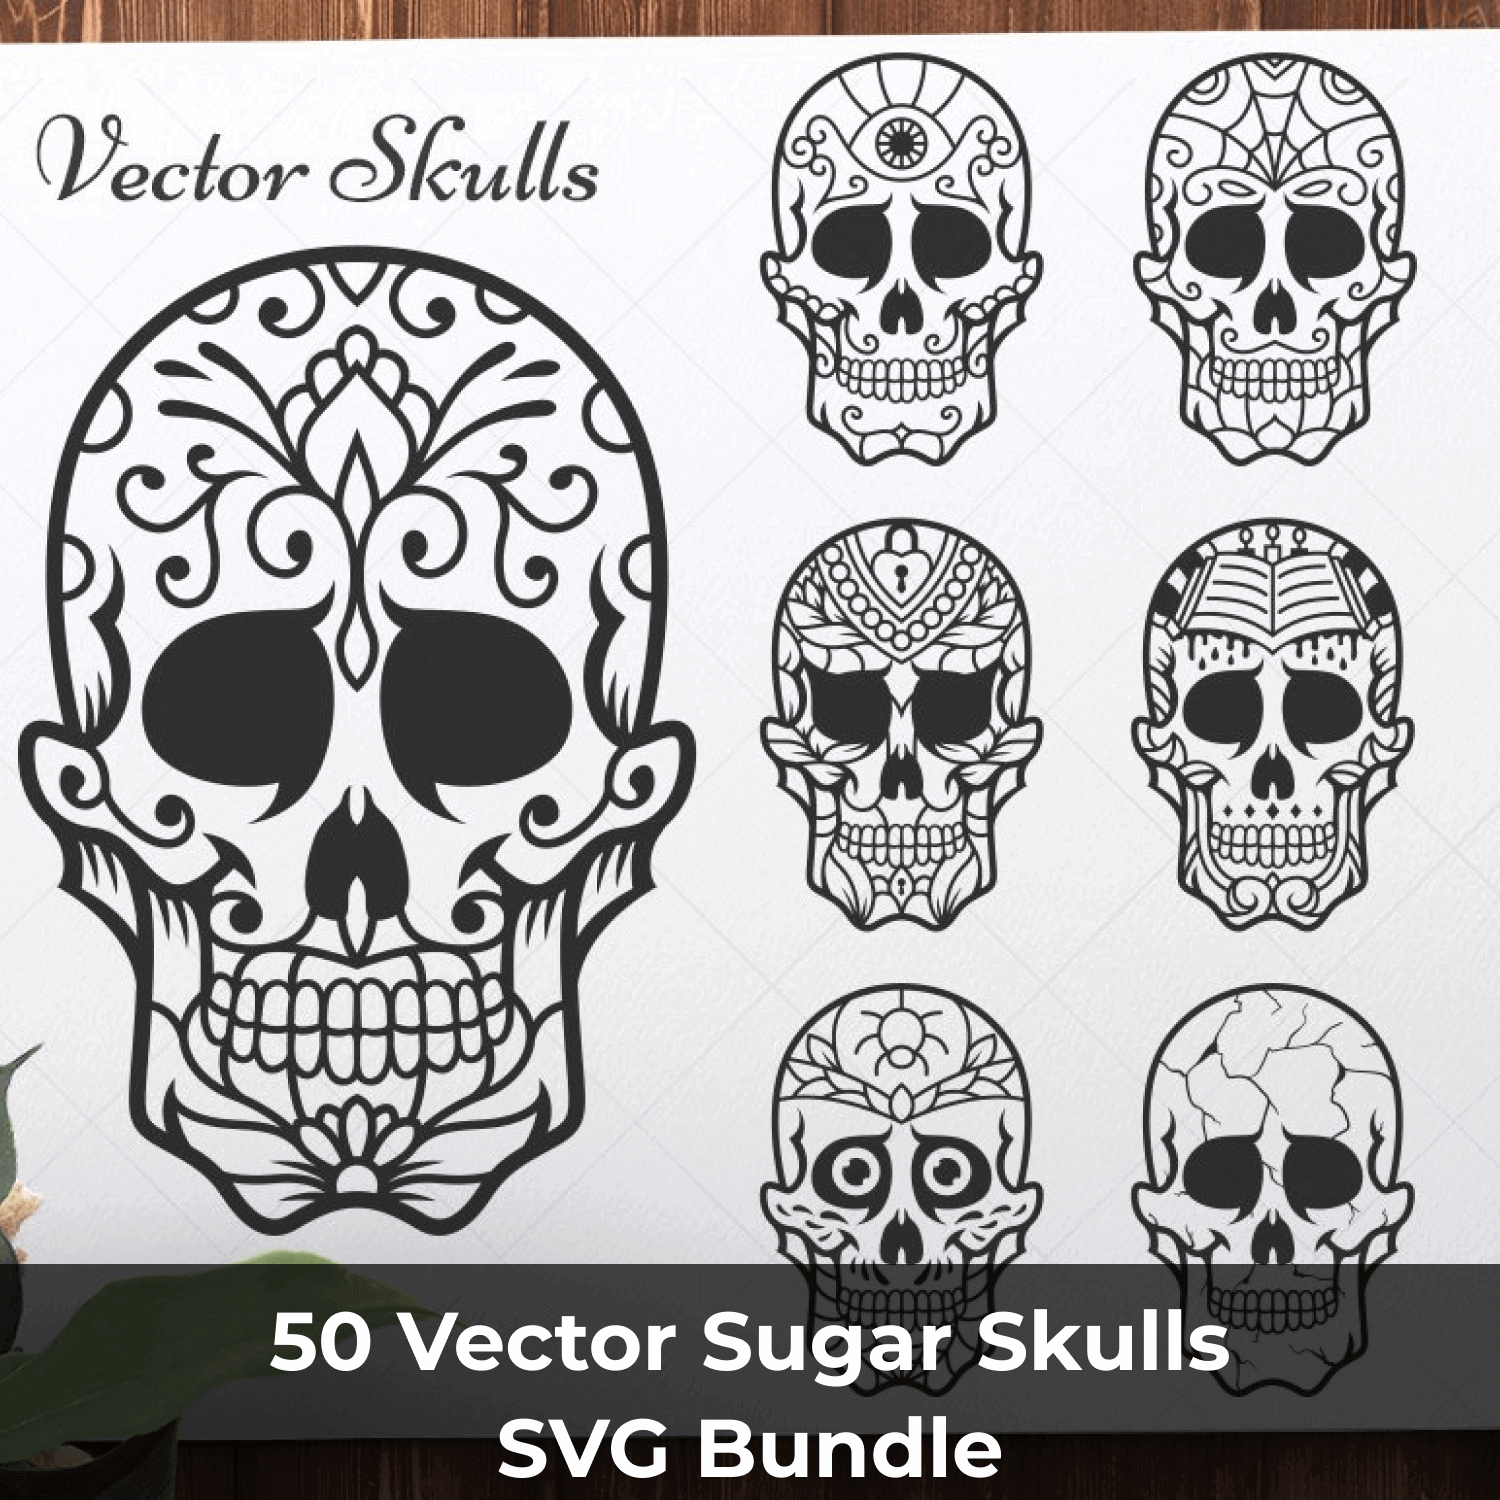 Vector Skulls.